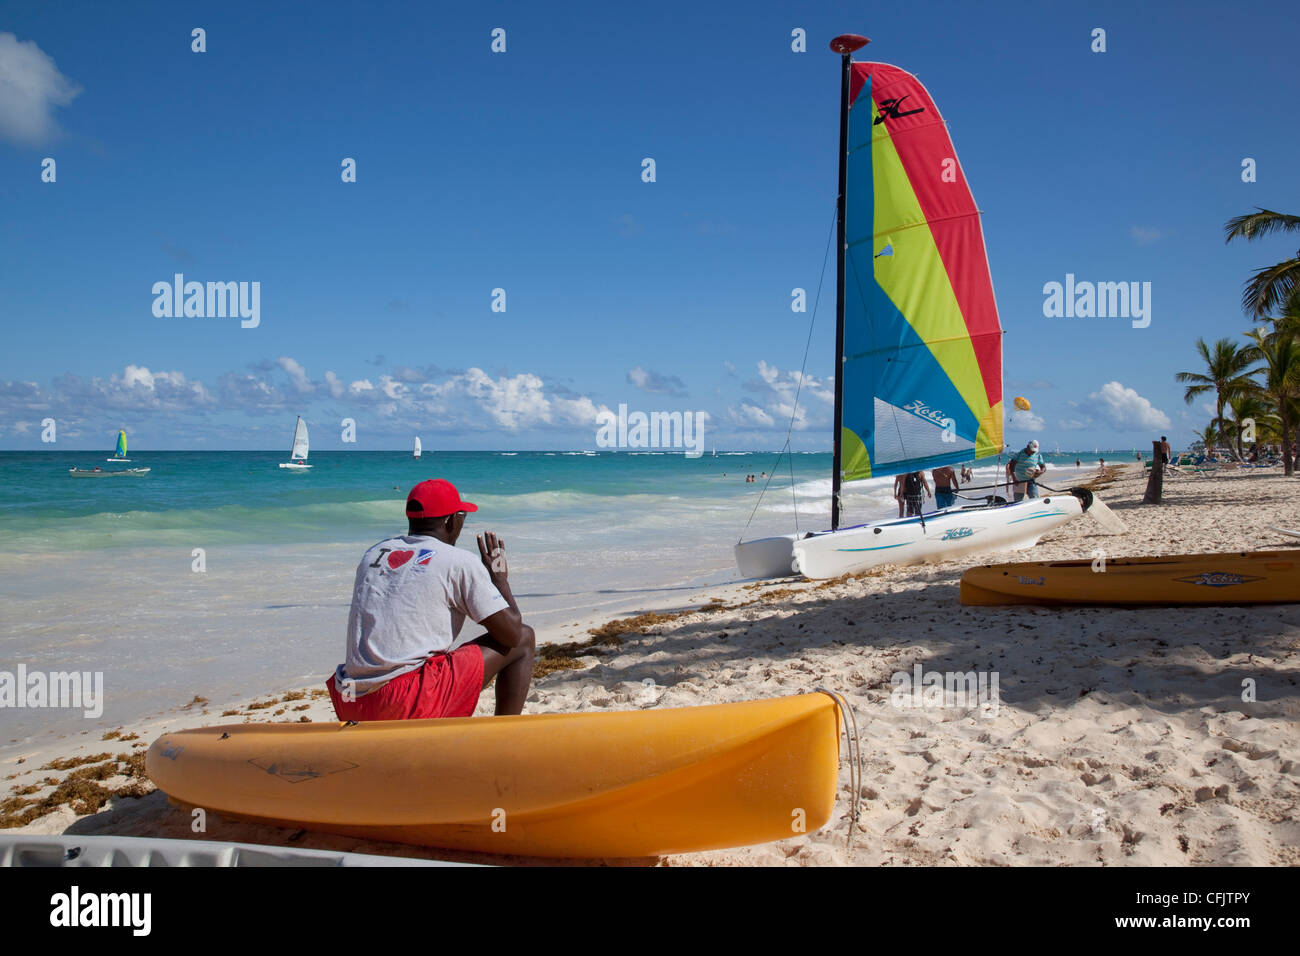 La plage de Bavaro, Punta Cana, République dominicaine, Antilles, Caraïbes, Amérique Centrale Banque D'Images